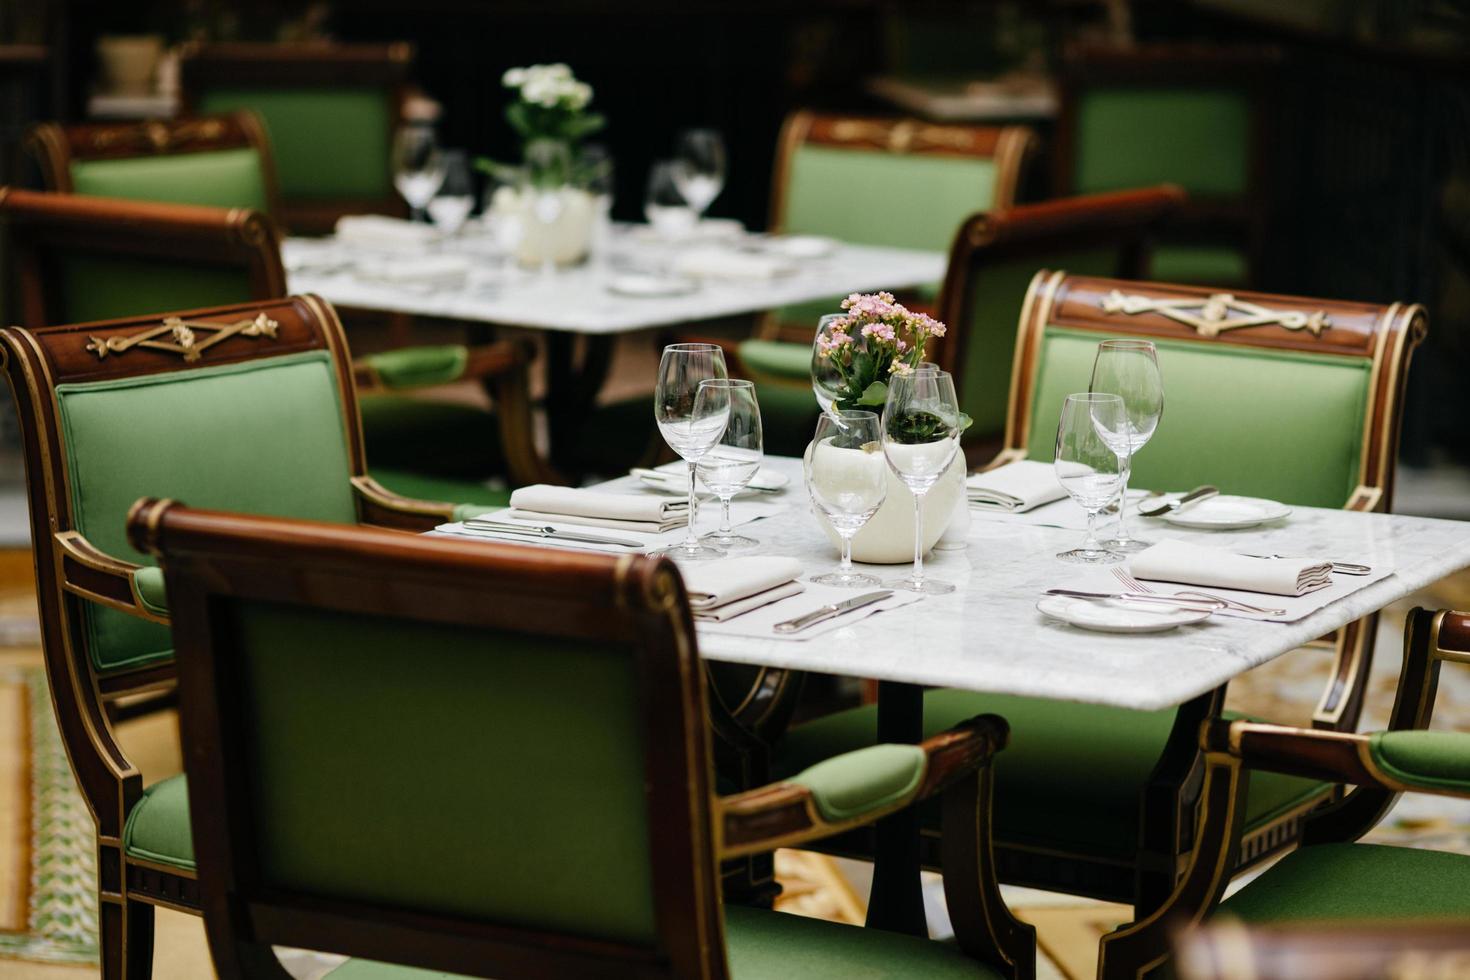 bord serveras med lyxiga glas, bestick, blommor, gröna stolar runt i mysig restaurang. ingen skjuten. dekorerat bord för festliga evenemang foto